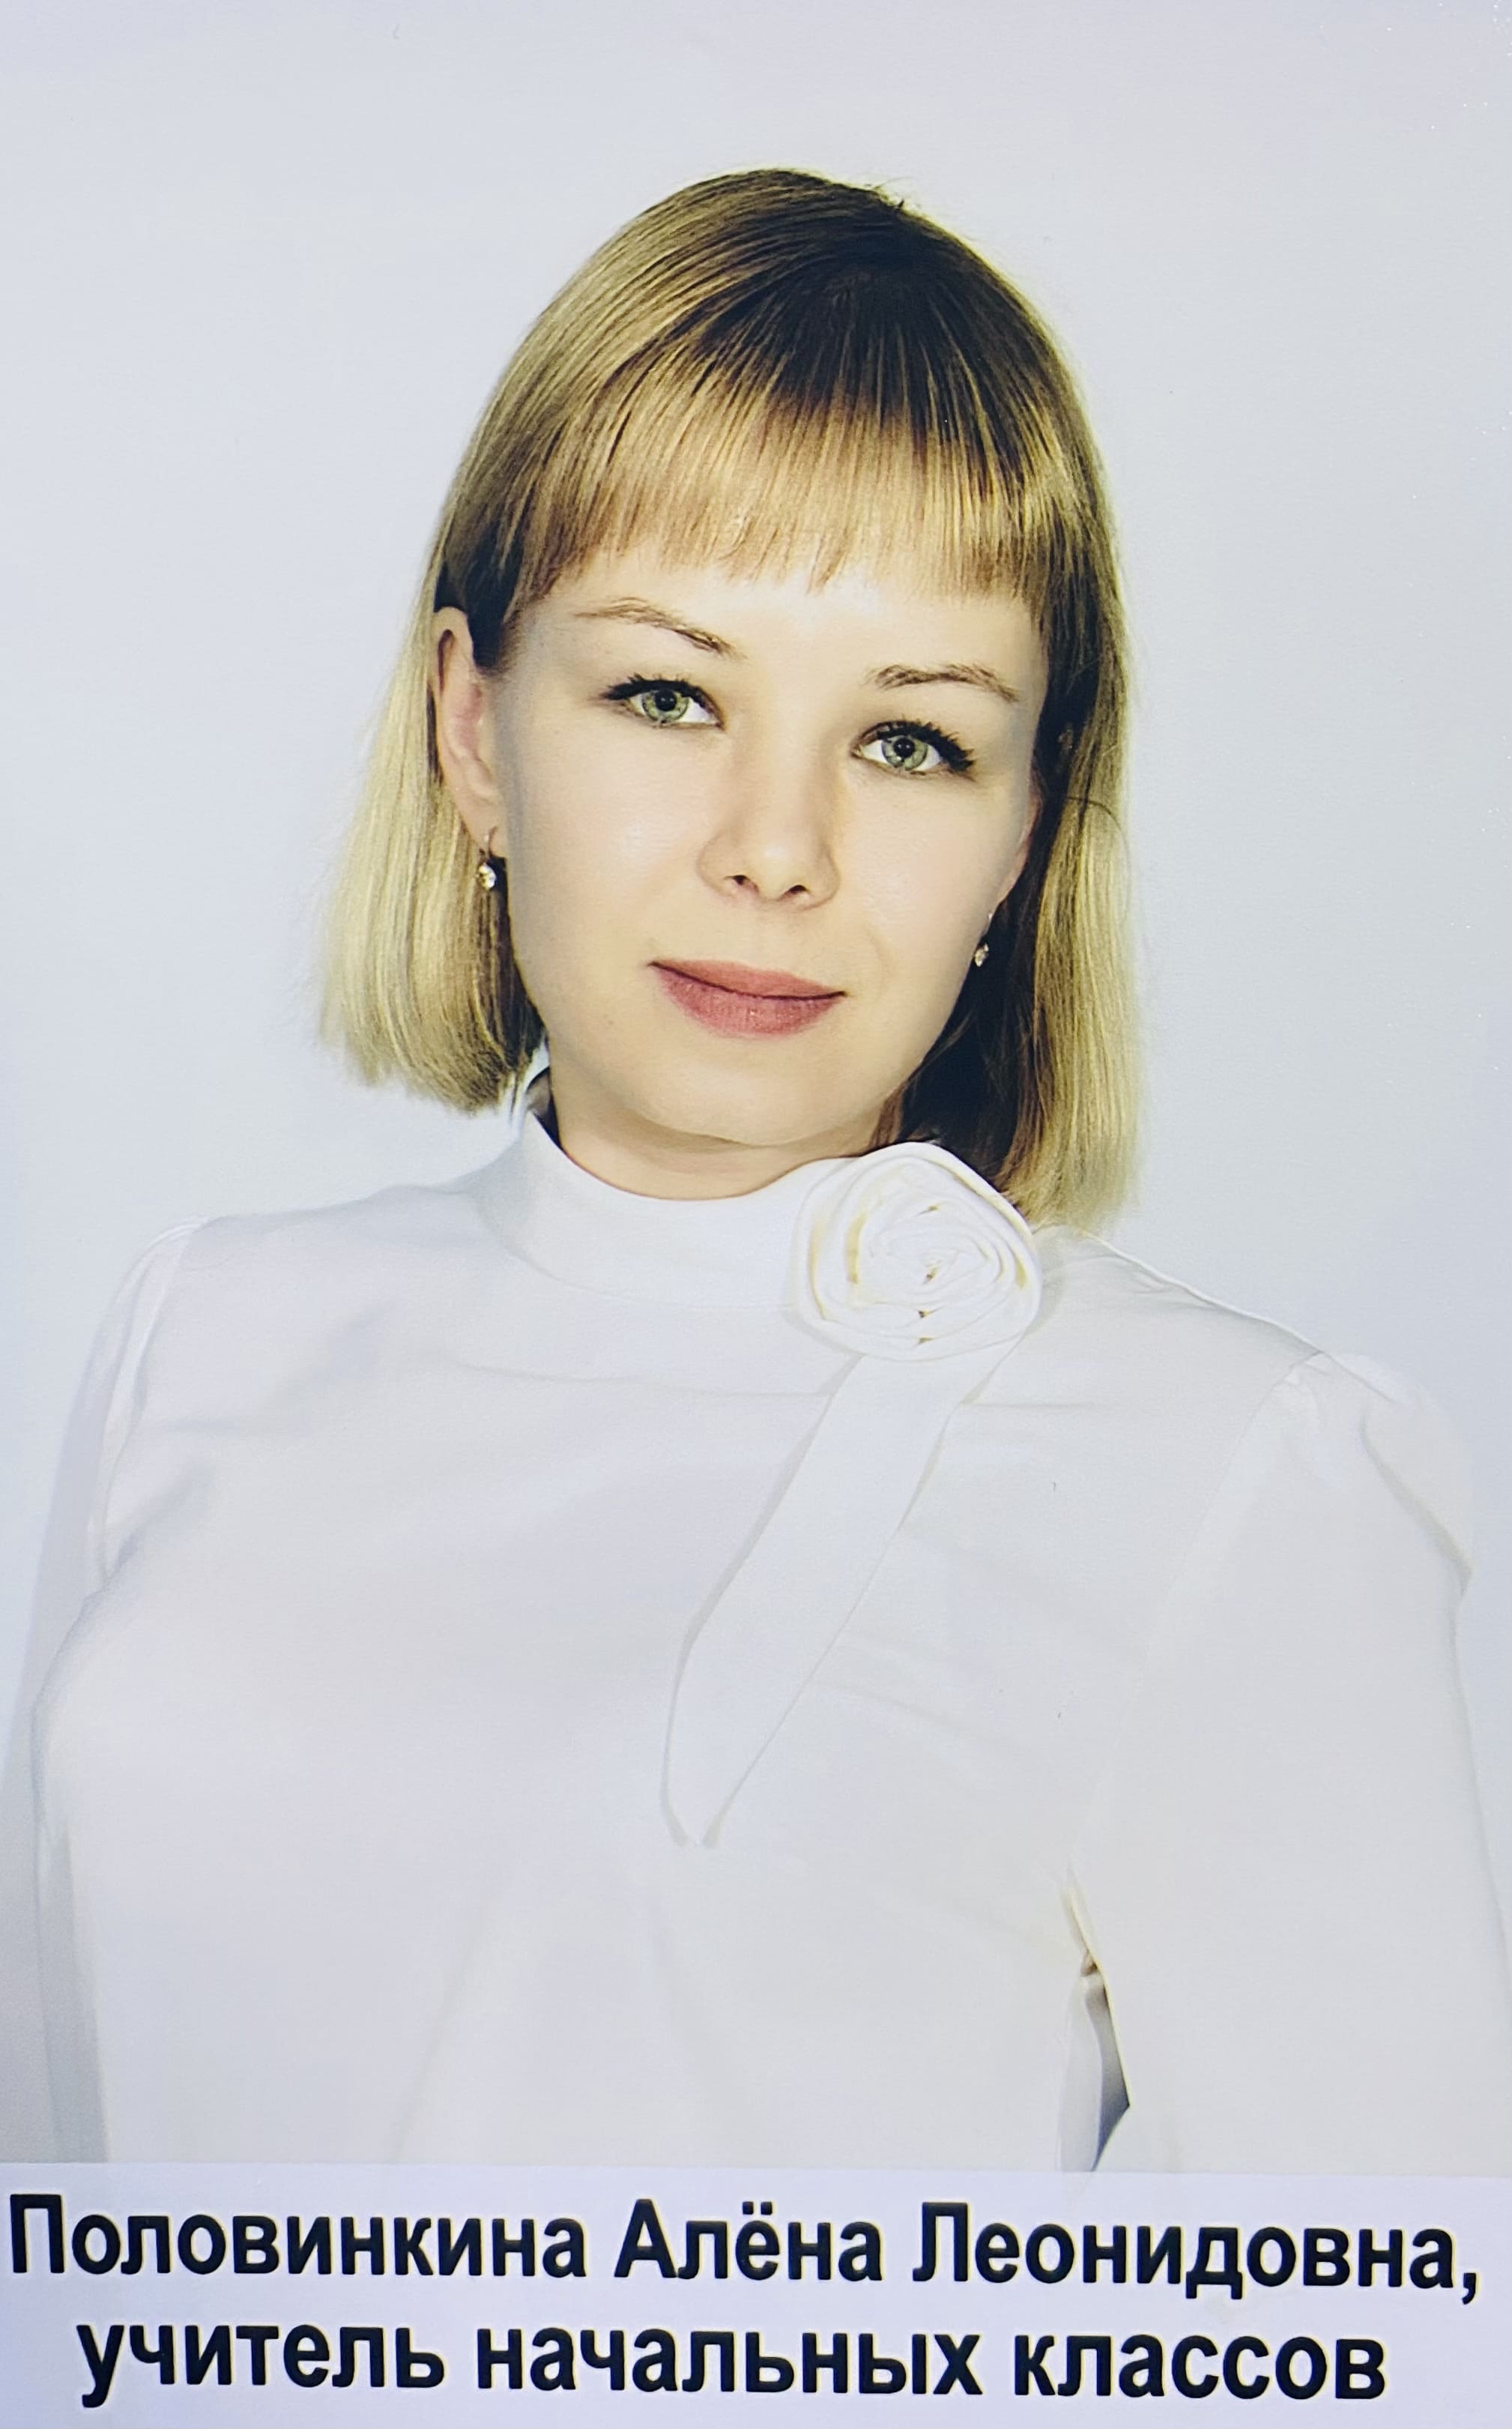 Половинкина Алёна Леонидовна.